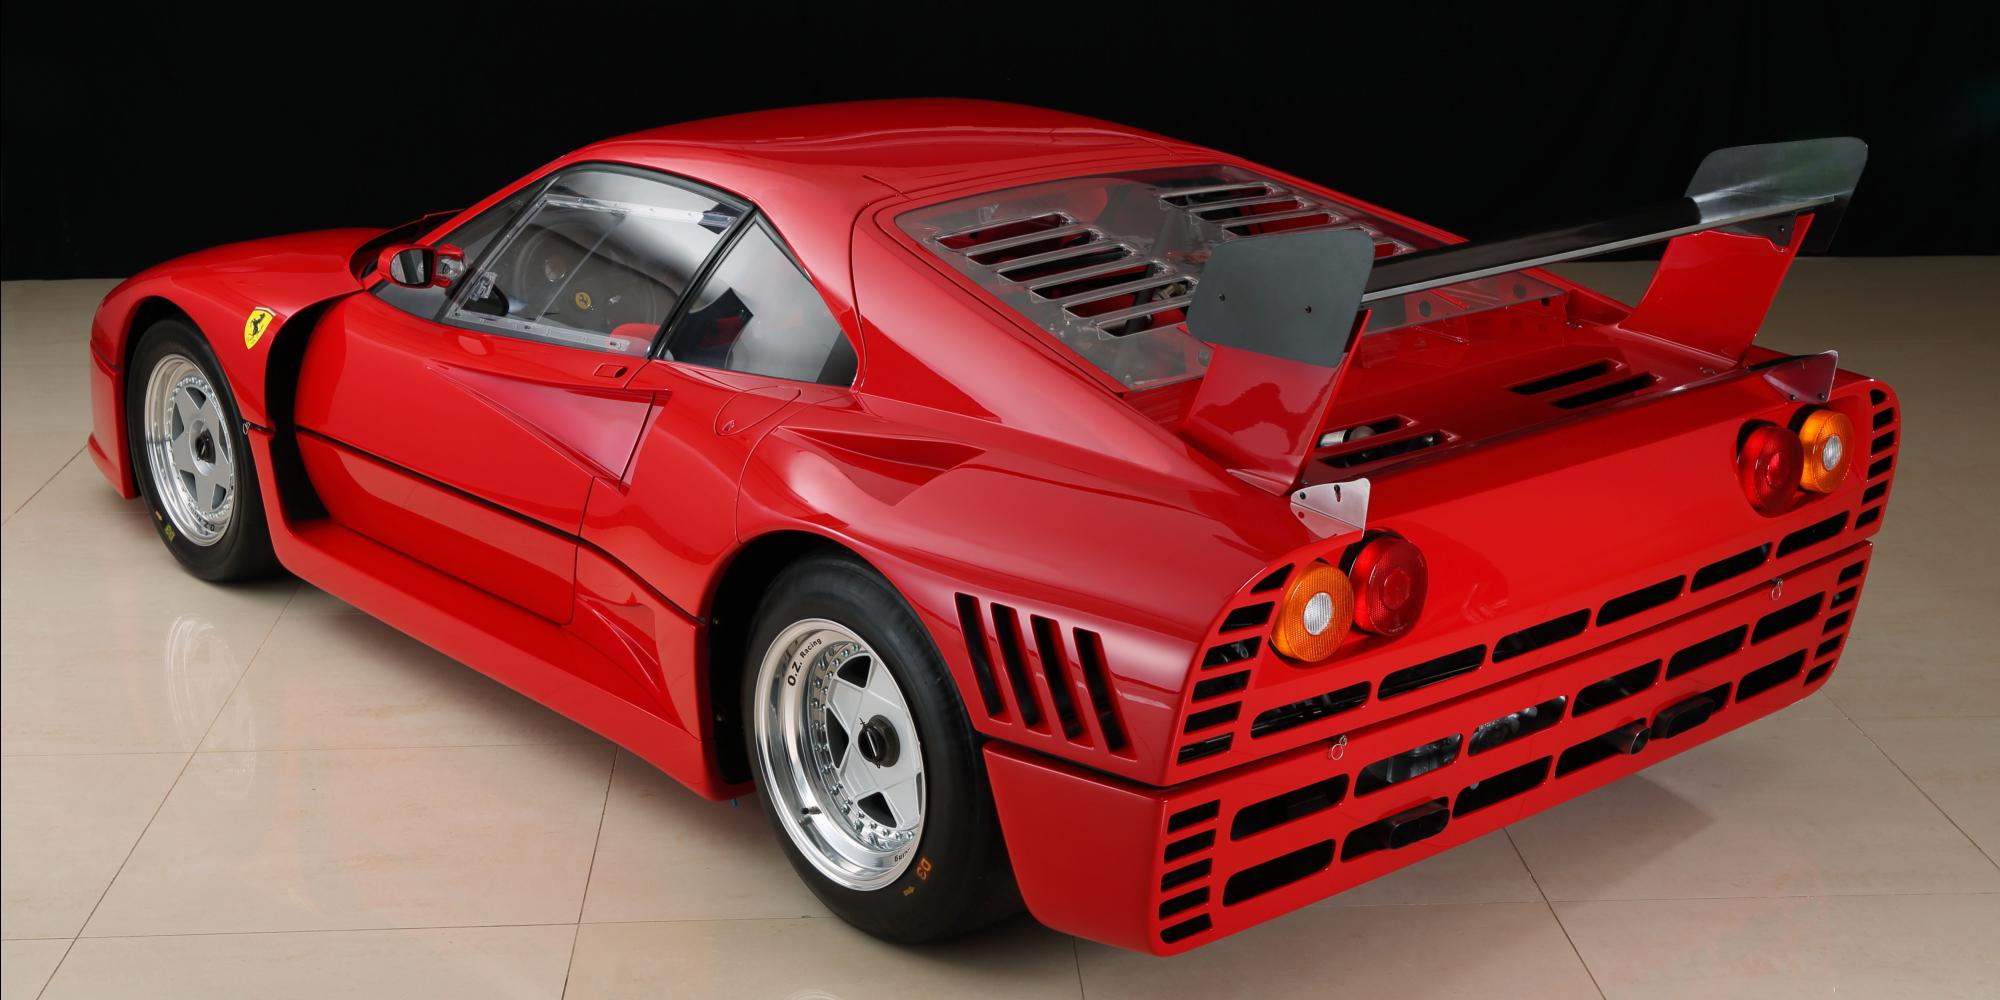 1984年式 フェラーリ 288 GTO Evoluzione|ビンゴスポーツ/希少車、 絶版車、高級車の販売・買取。